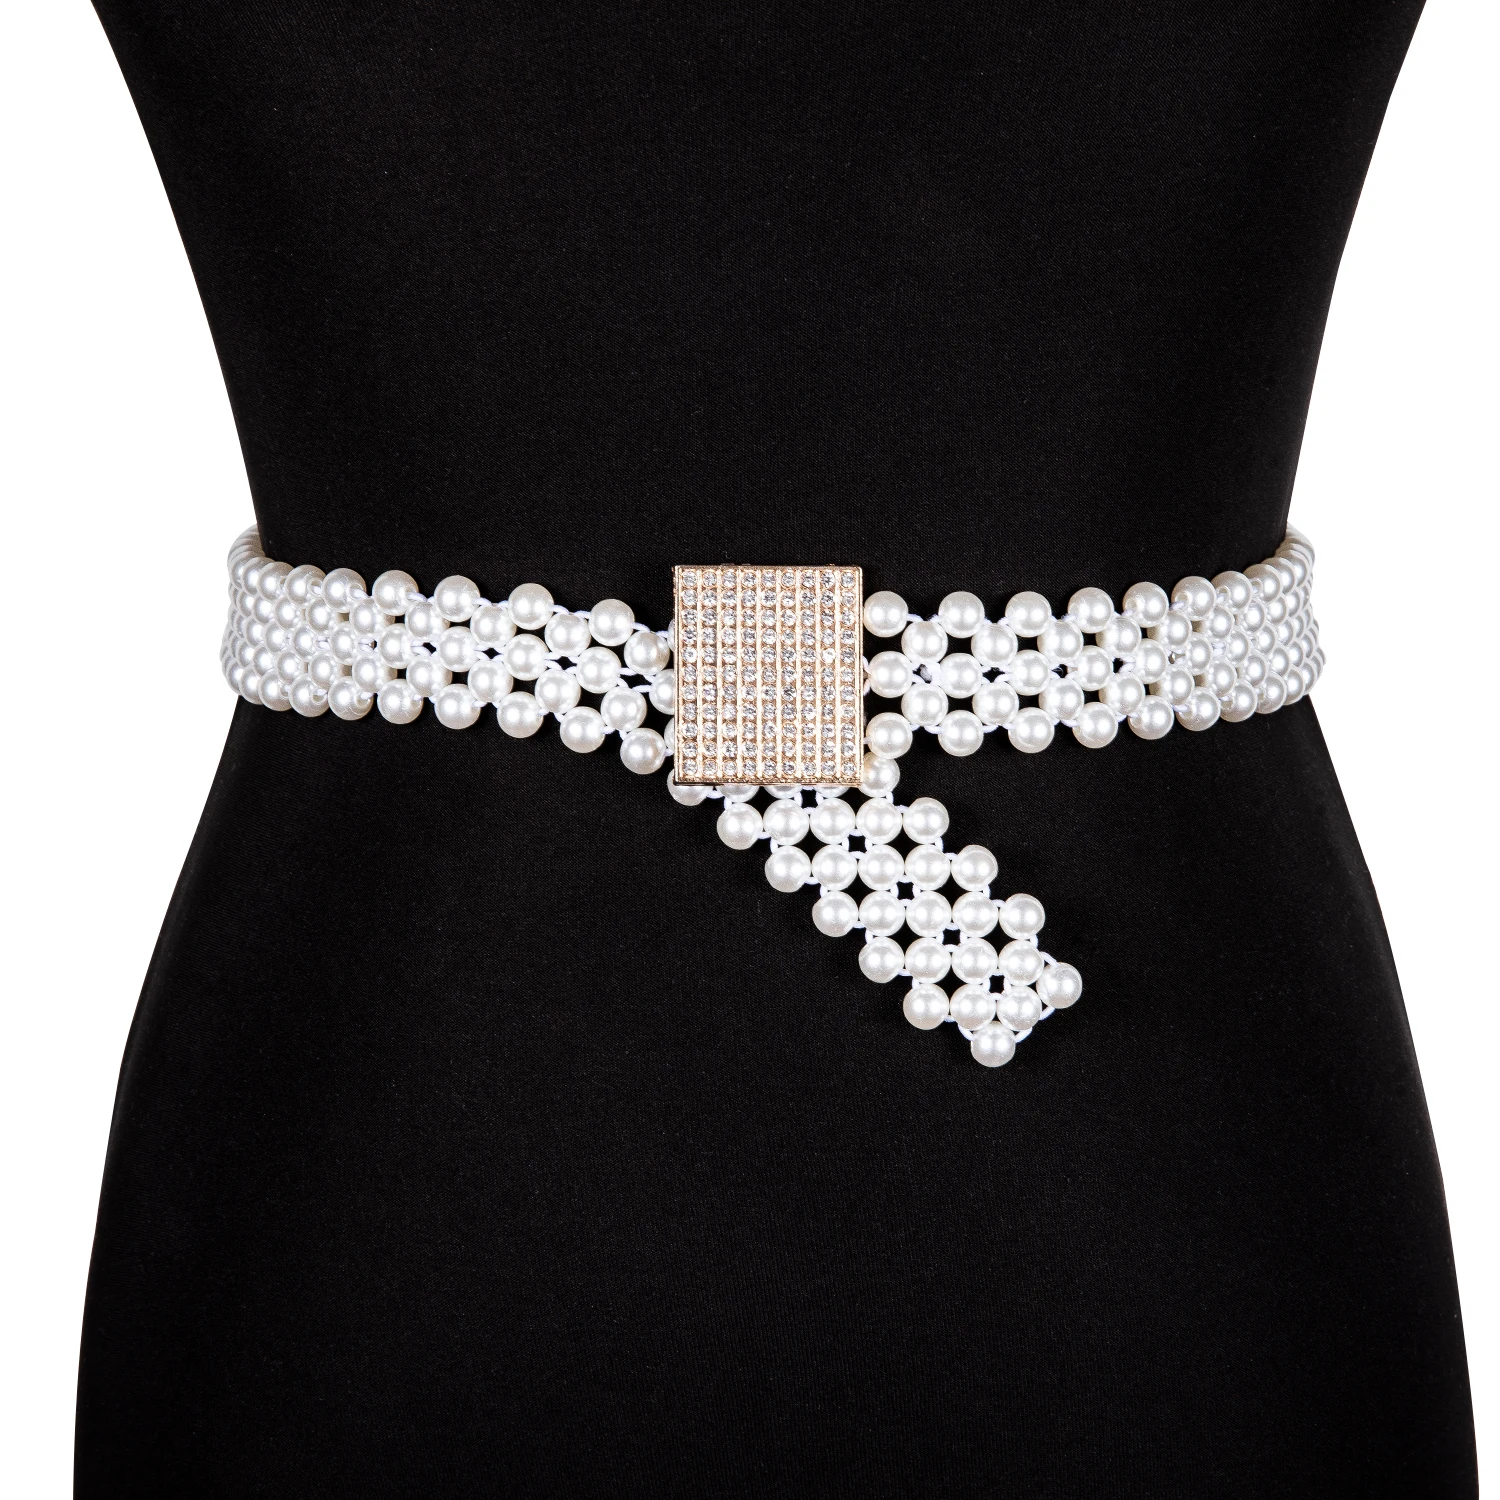 BR1016 модные роскошные женские Стразы ремень женский яркий широкий с украшениями в виде кристаллов алмаза цепочка на талии, пояс на резинке, пояс с жемчугом